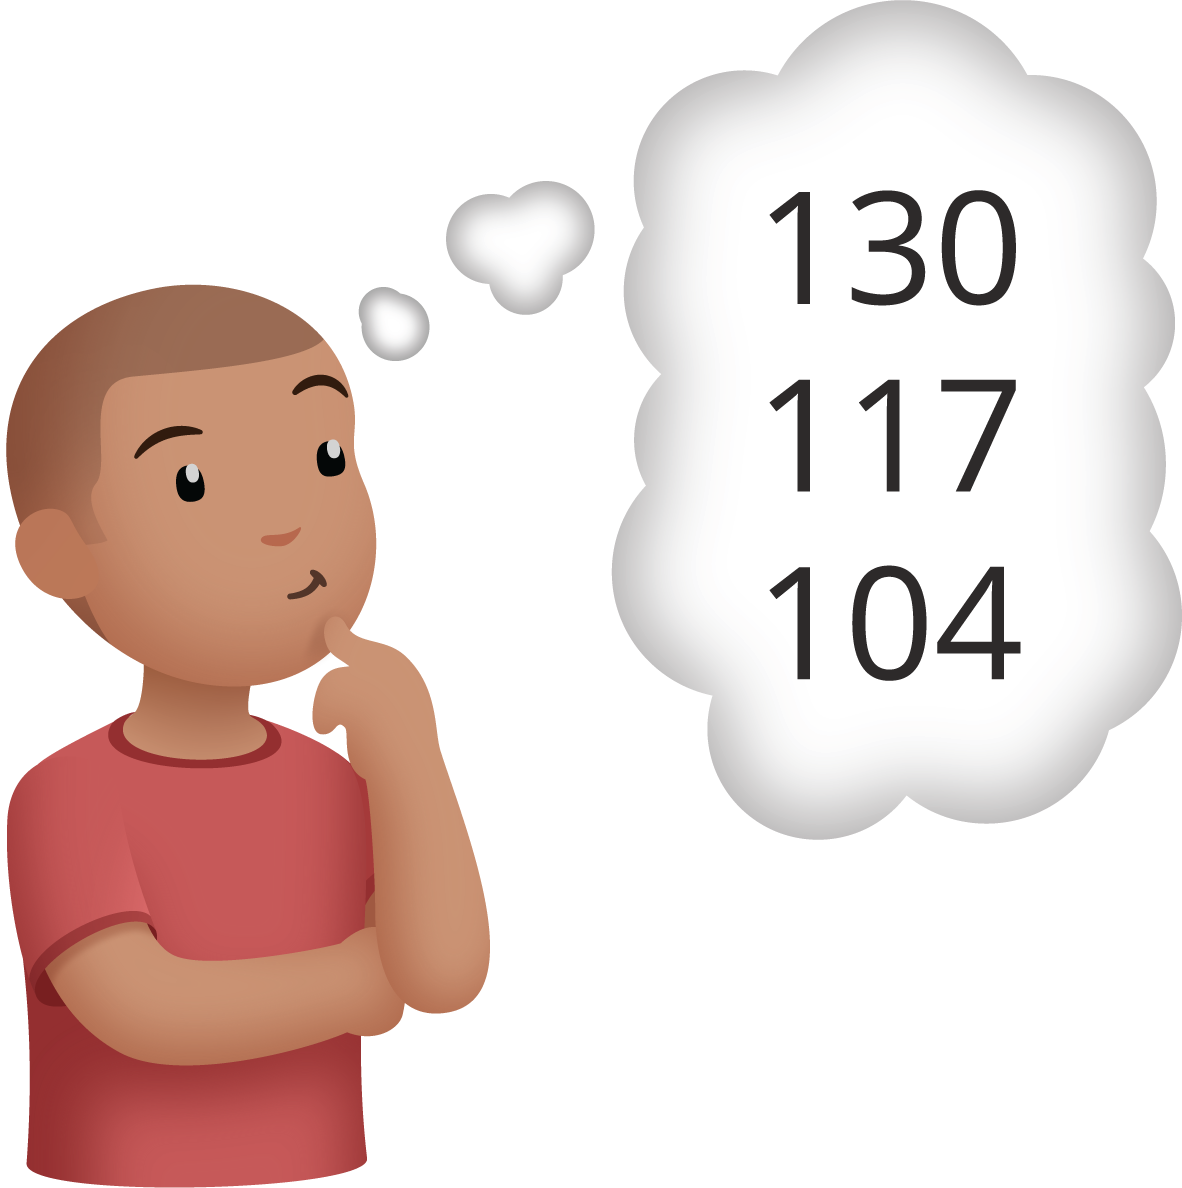 Un estudiante está pensando en los números 104, 117 y 130.